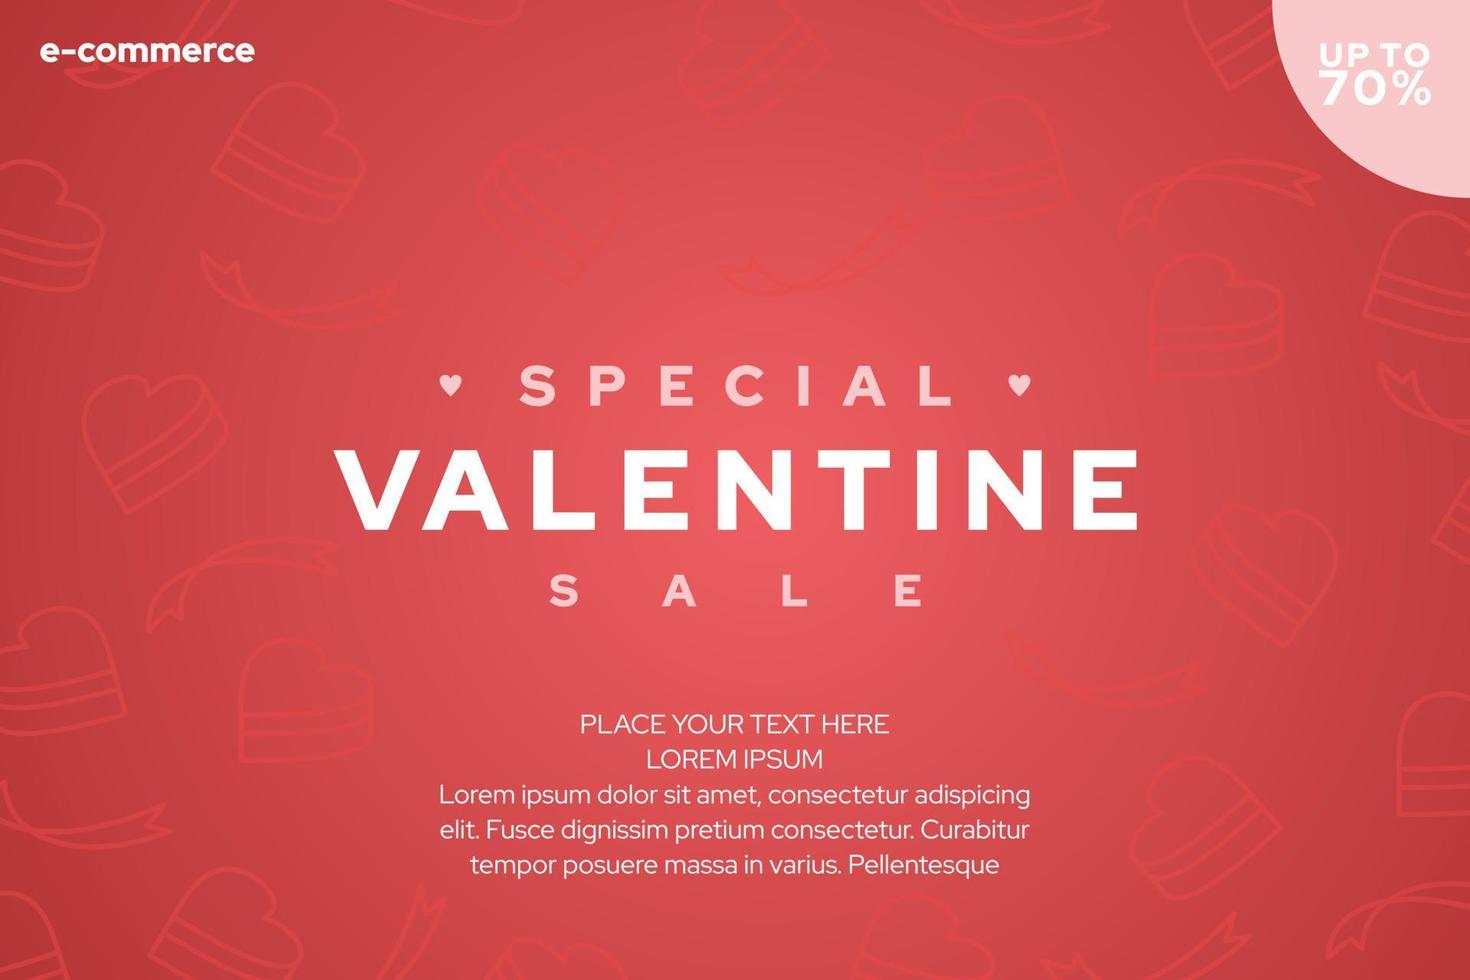 diseño de banner de promoción de ventas del día de San Valentín adecuado para publicaciones en redes sociales, folletos, carteles, banners web, etc. vector